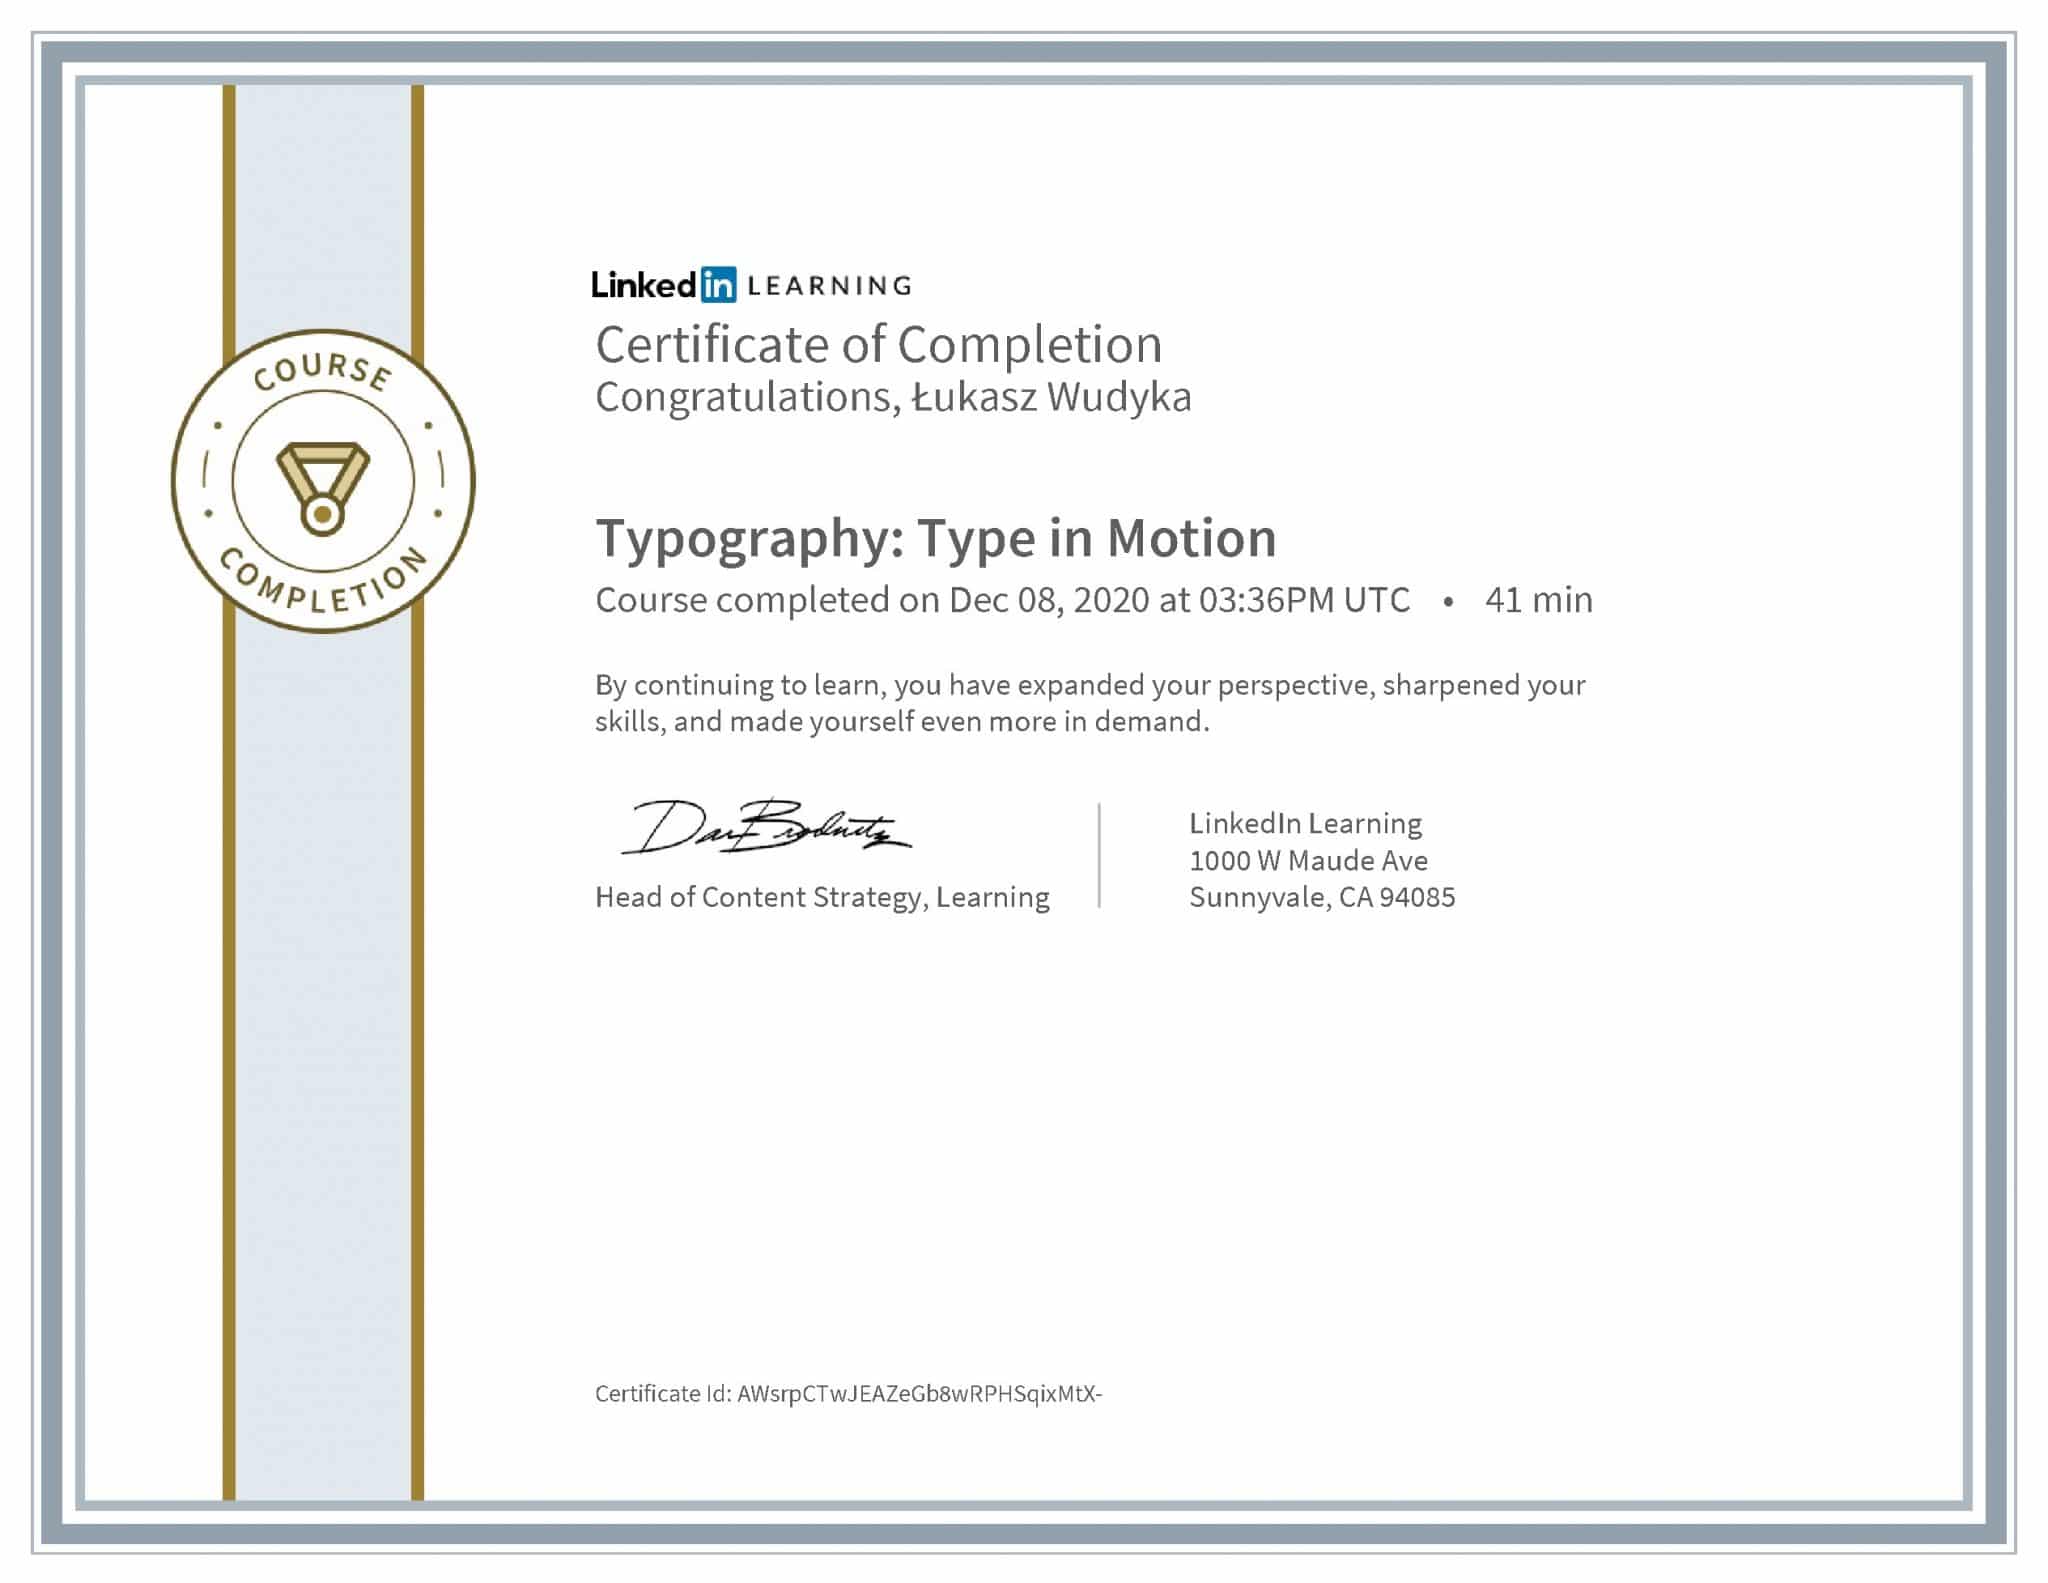 Łukasz Wudyka certyfikat LinkedIn Typography: Type in Motion